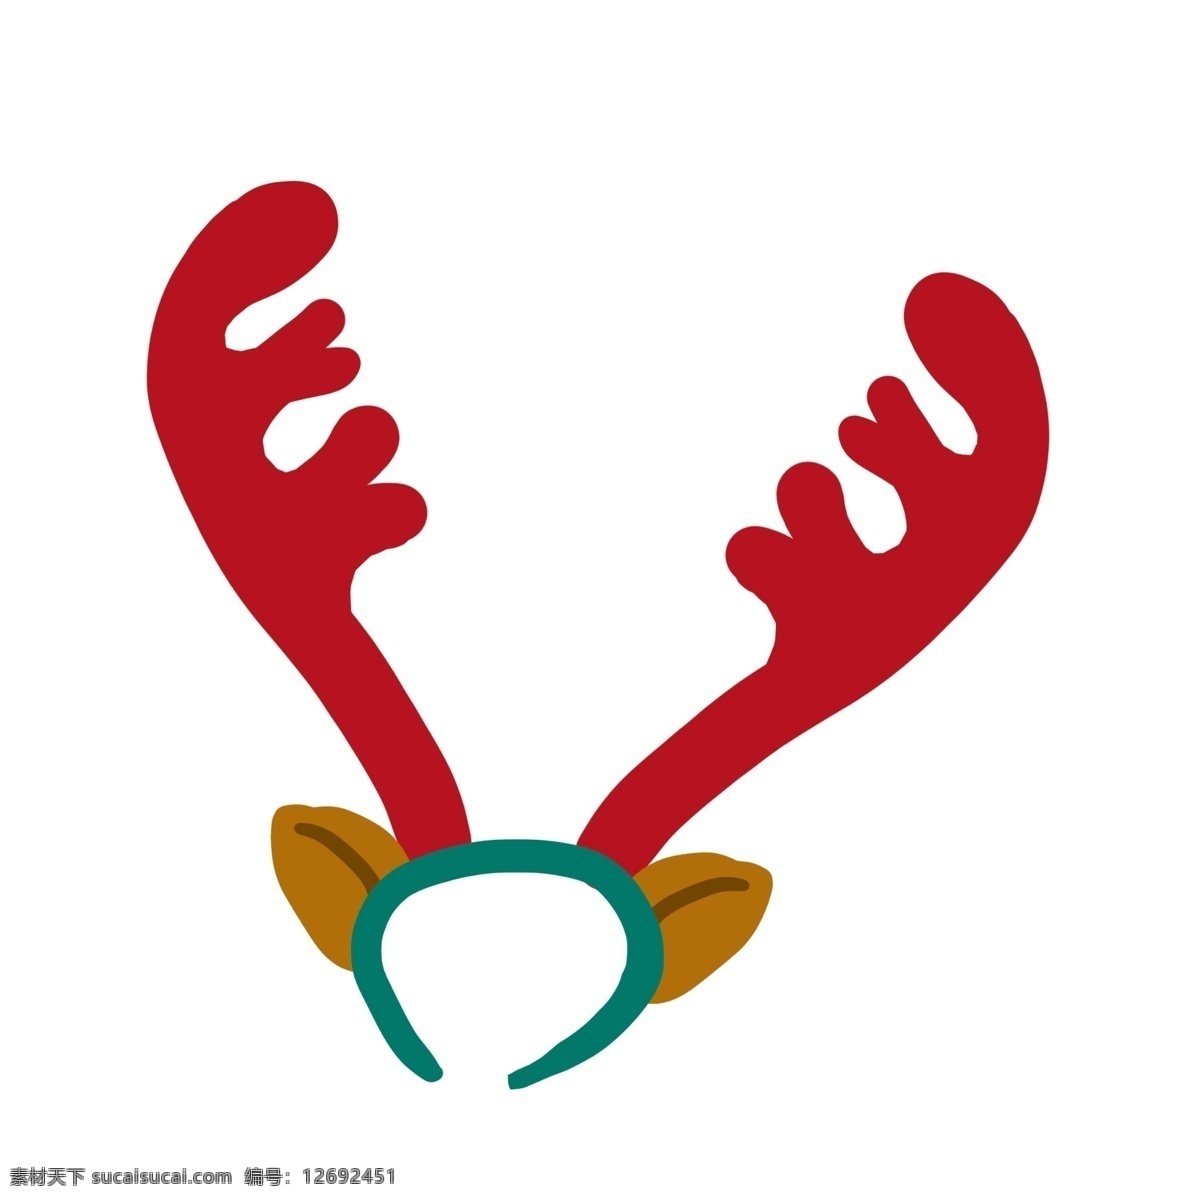 圣诞节 小鹿 头套 发夹 麋鹿 可爱 萌 耳朵 装扮 装饰 插画 手绘 卡通 配饰 发卡 玩具